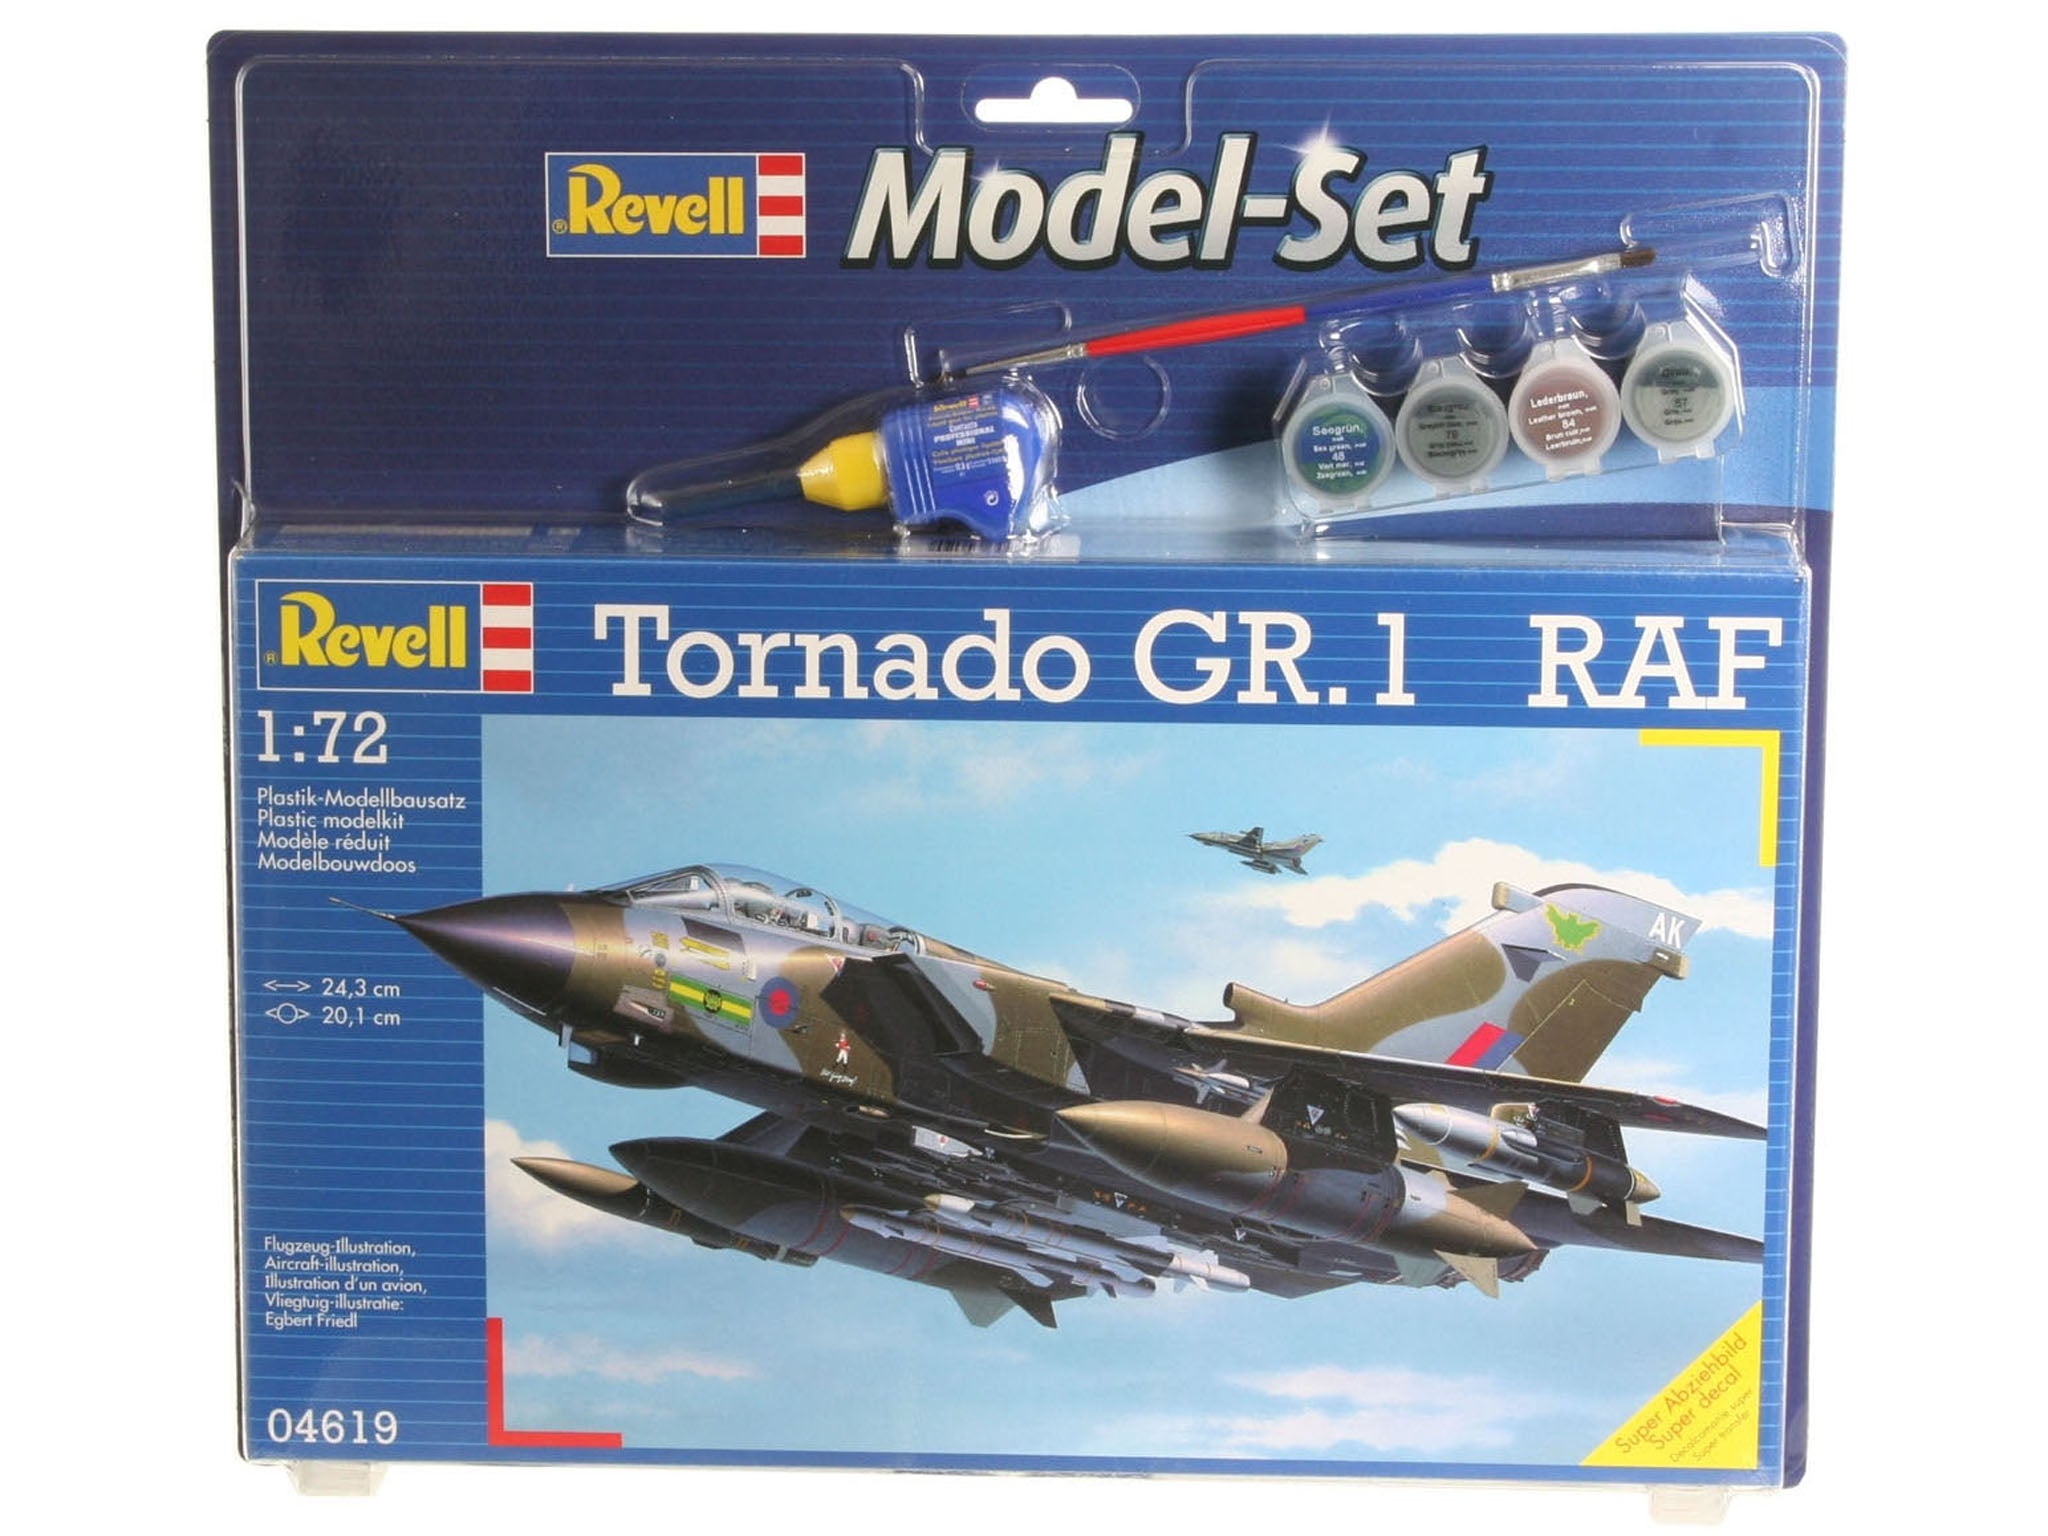 Plane Model Kit Revell Model Set Tornado GR.1 RAF 1:72